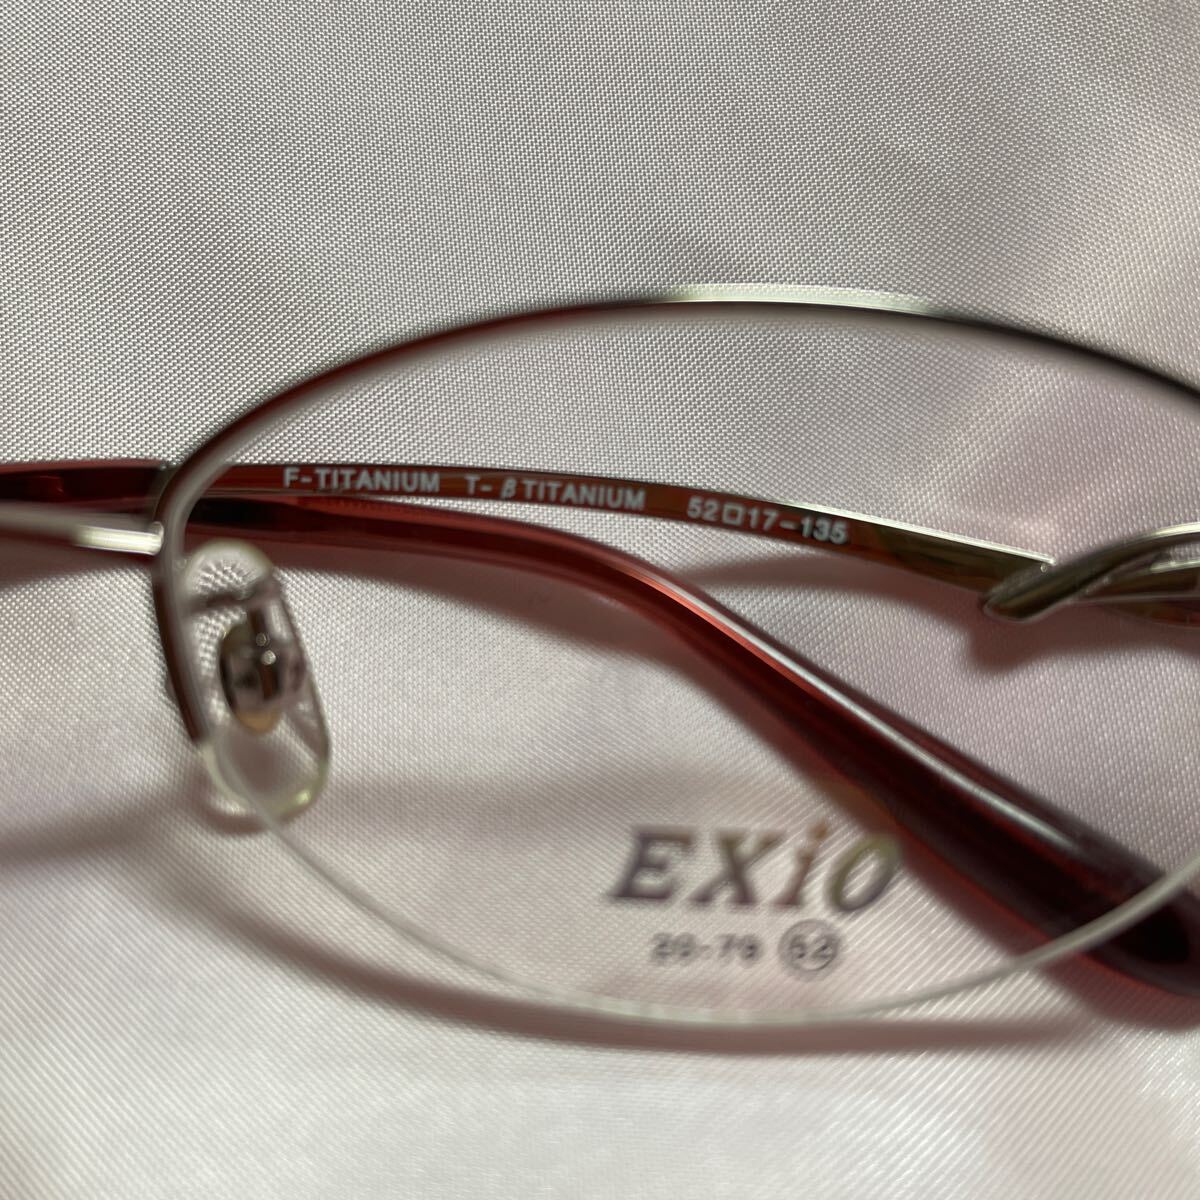 EXiO 20-79 メガネフレーム 展示品 薄いピンク色 レンズサイズ52mm 鼻幅17mm テンプル長135mmナイロール TITANIUM 日本製_画像10